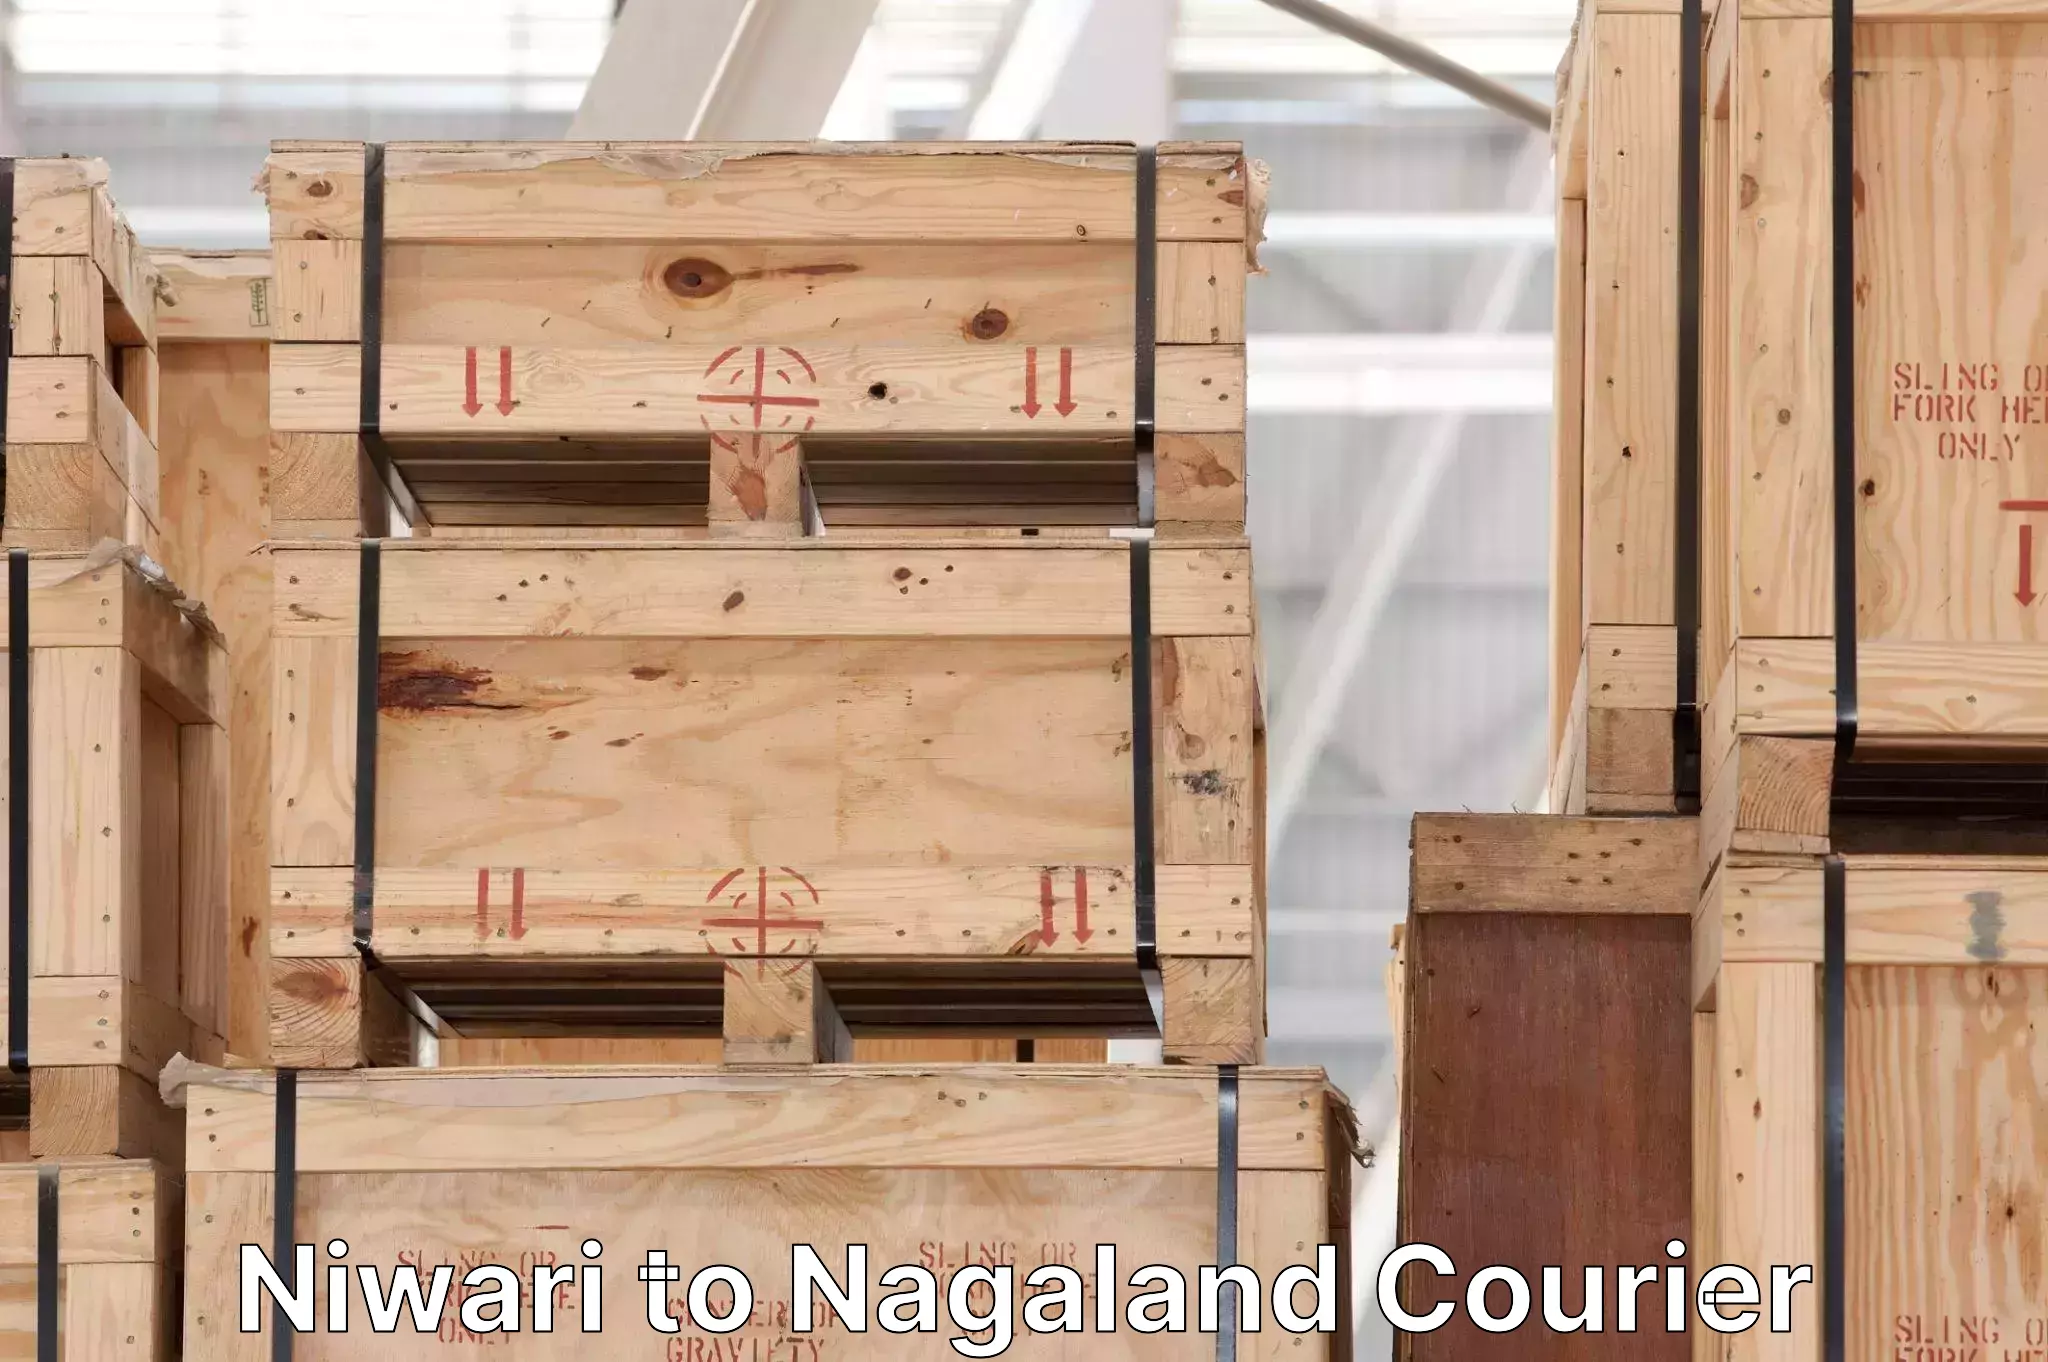 Urgent courier needs Niwari to Nagaland